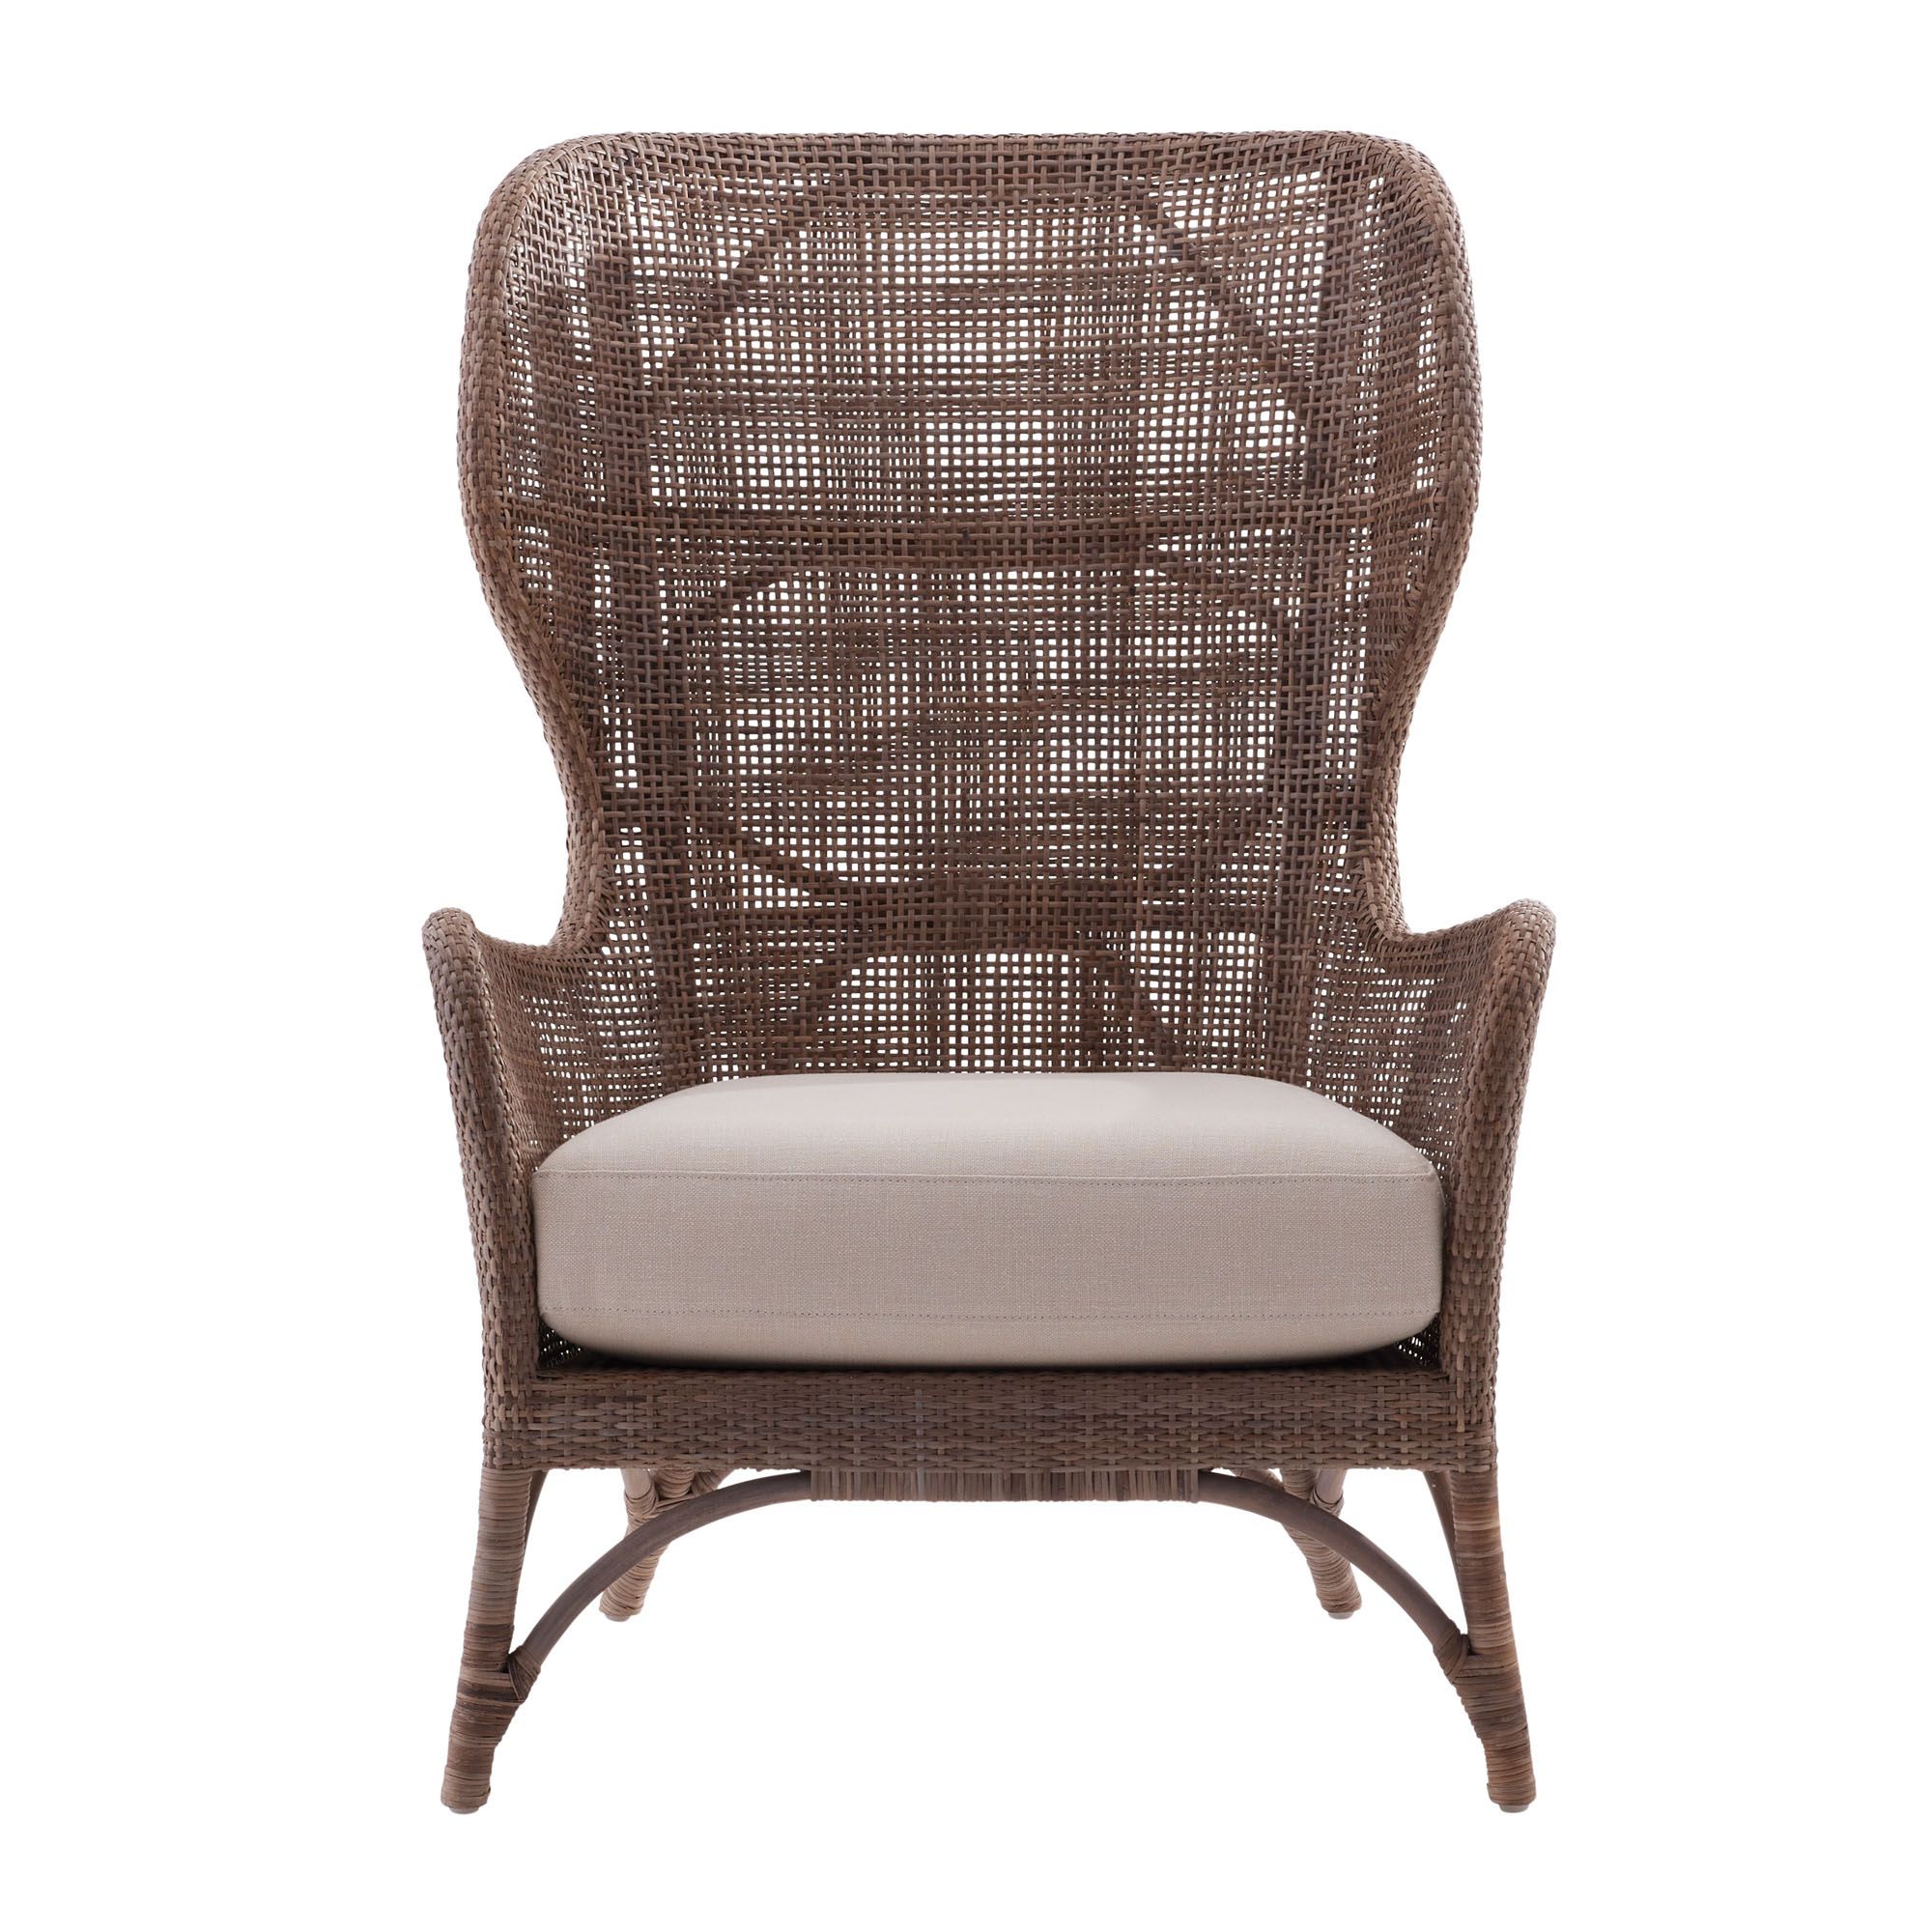 Купить Кресло Nomad Chair в интернет-магазине roooms.ru